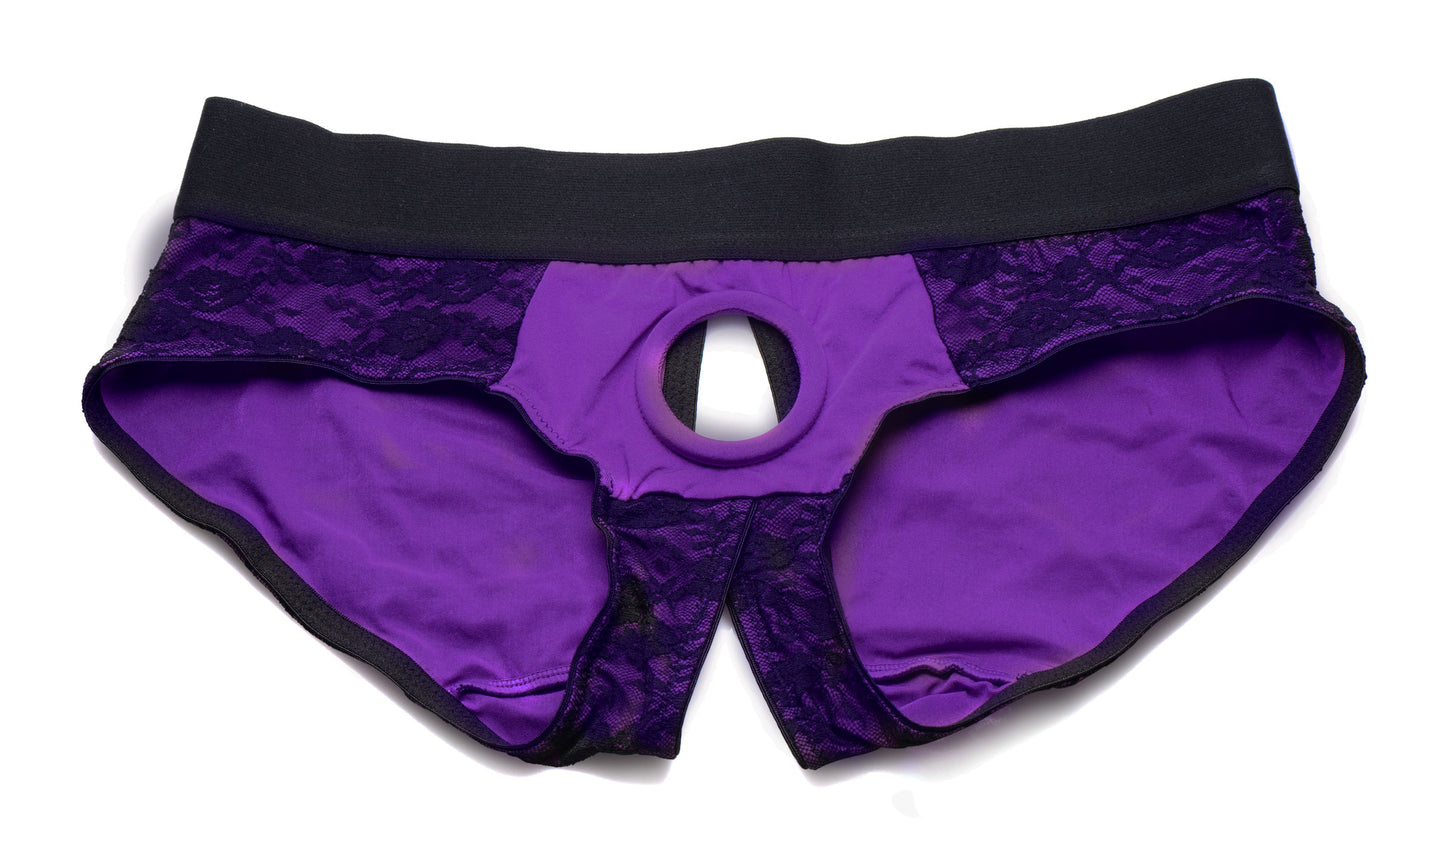 Lace Envy Crotchless Panty Harness - L-XL - UABDSM